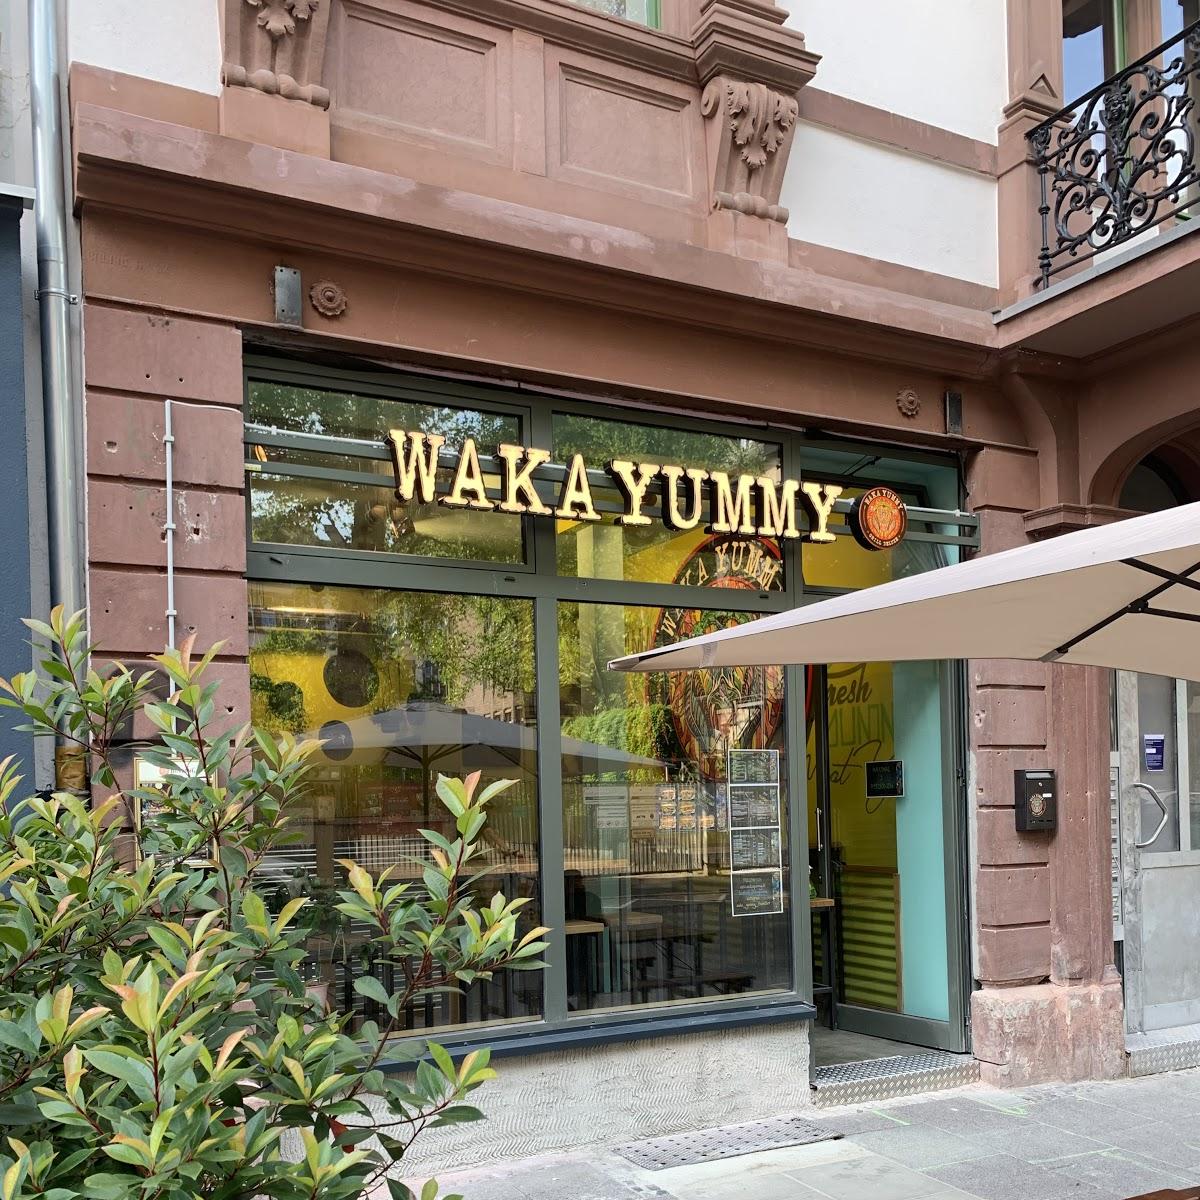 Restaurant "WAKA YUMMY" in Frankfurt am Main